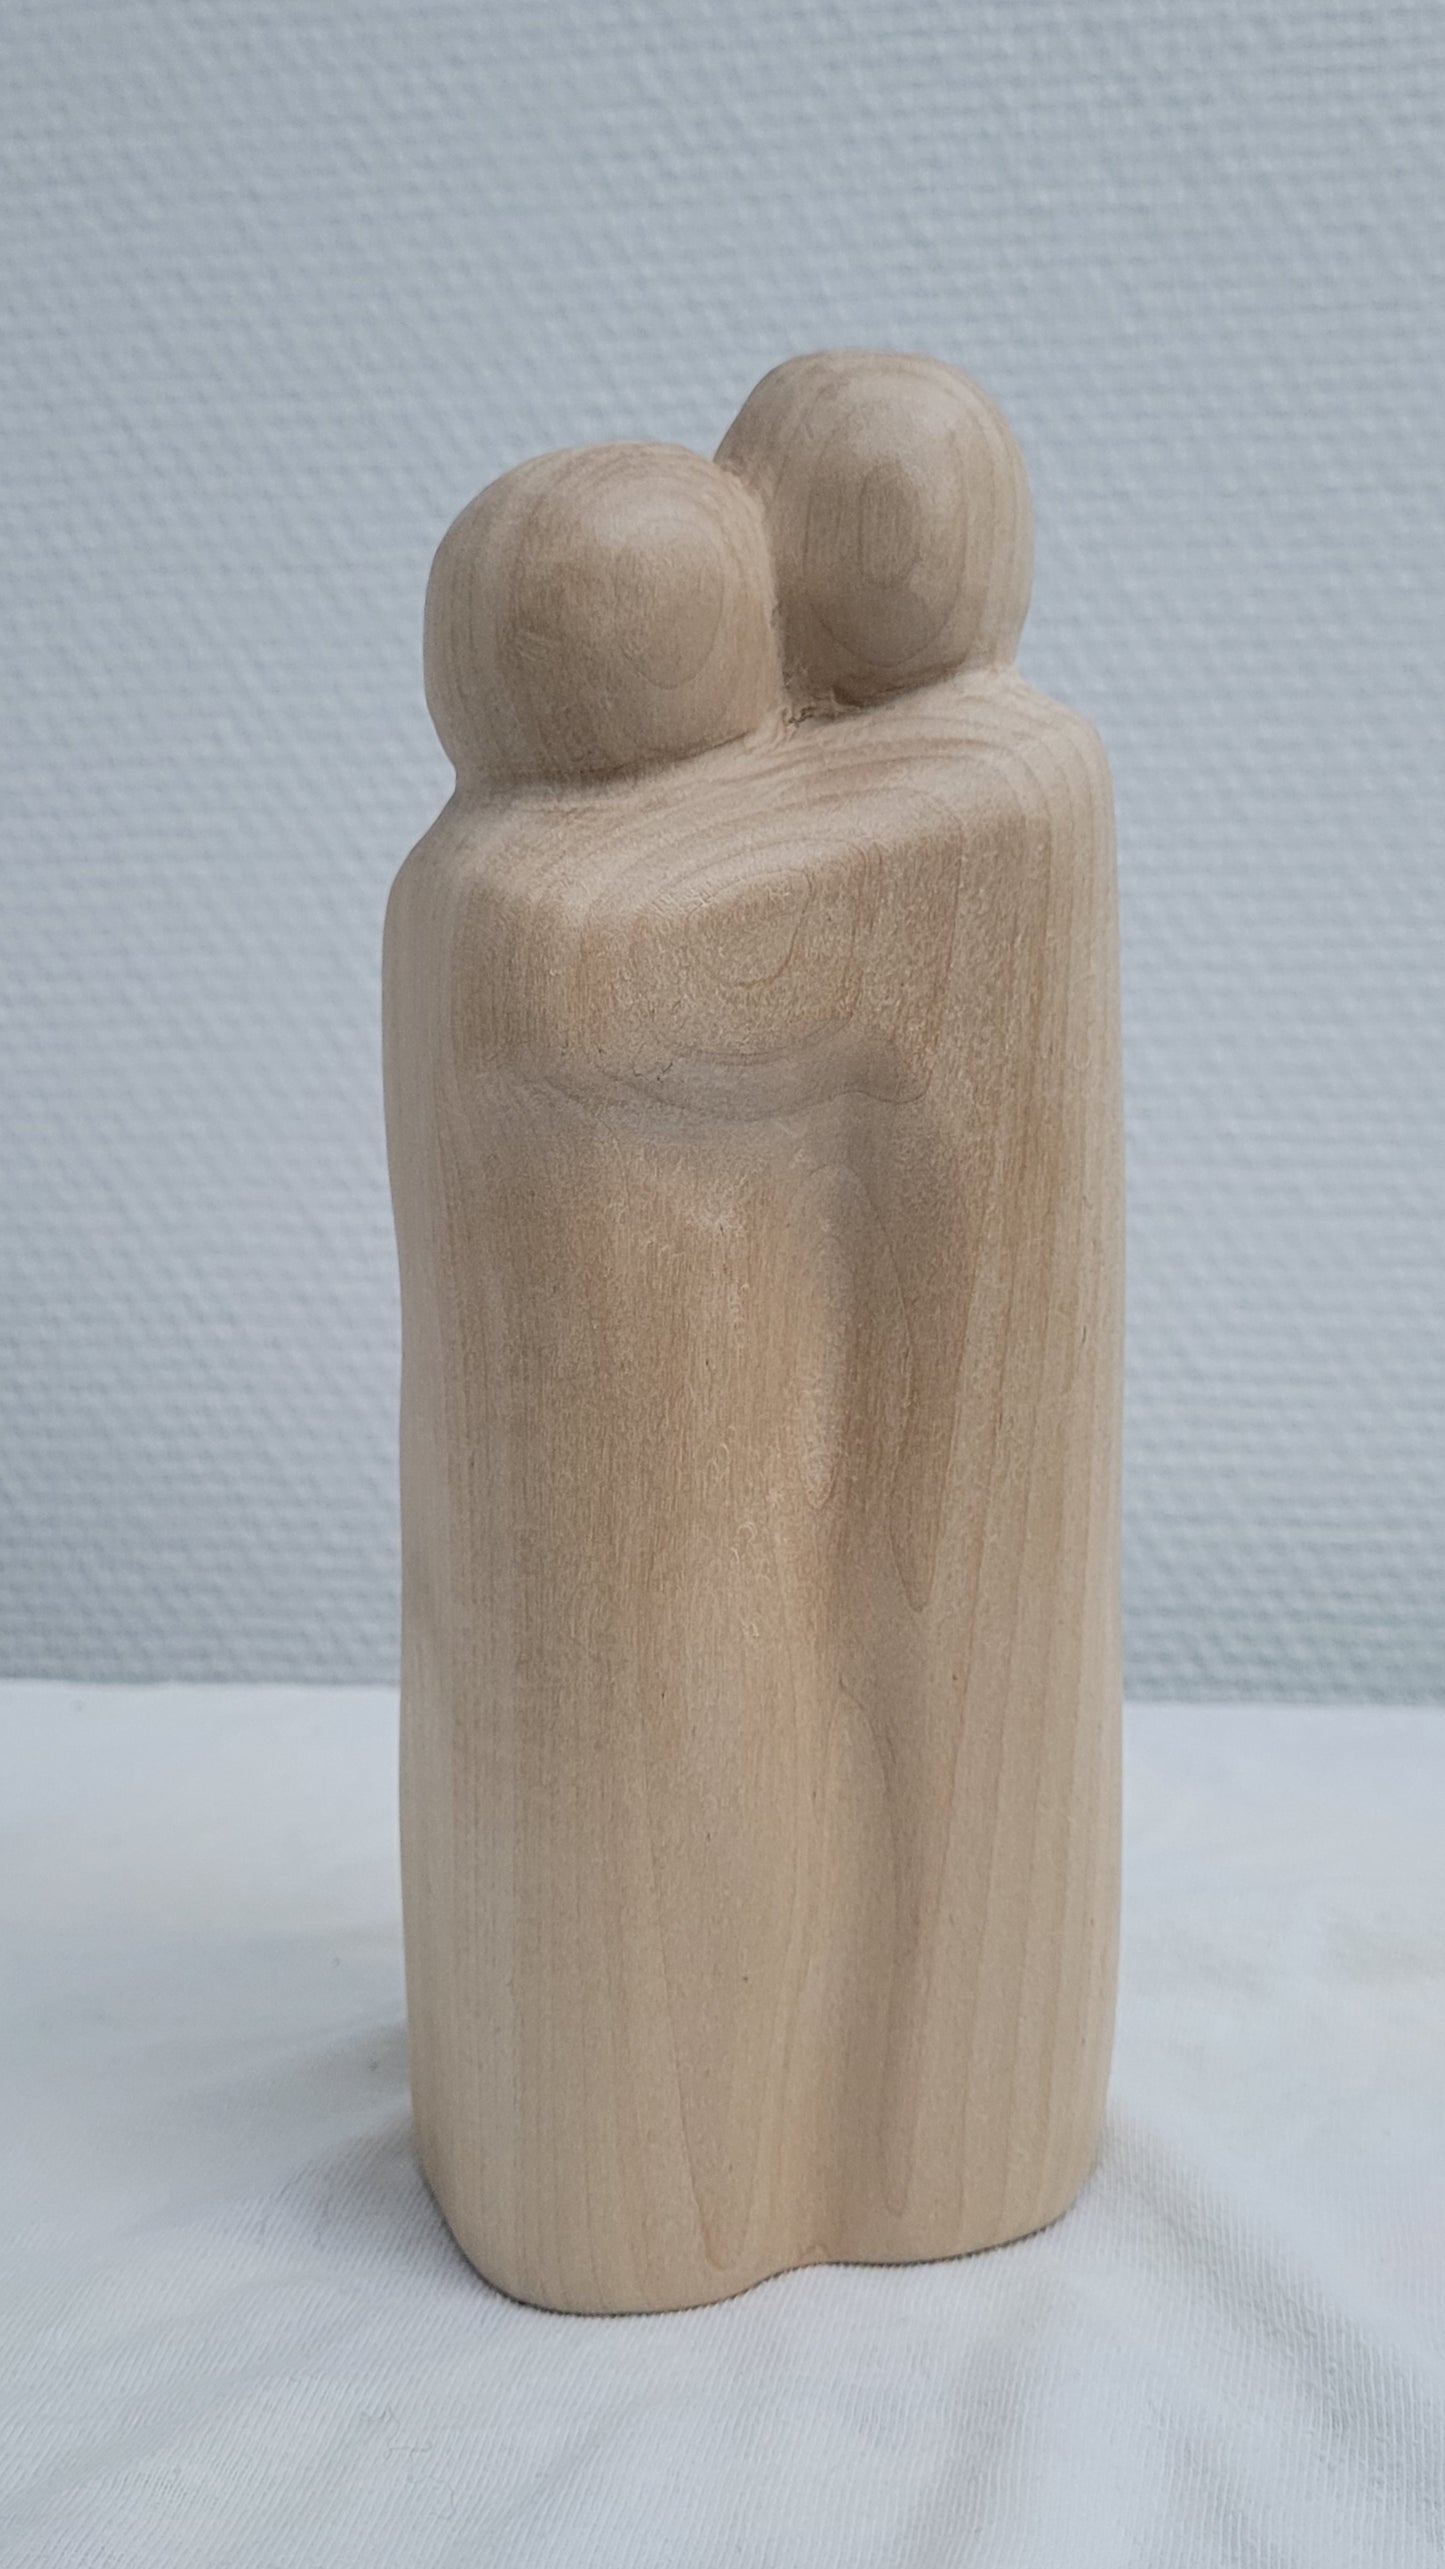 Les Amoureux, sculpture contemporaine en bois de tilleul, Eveline David-Valette